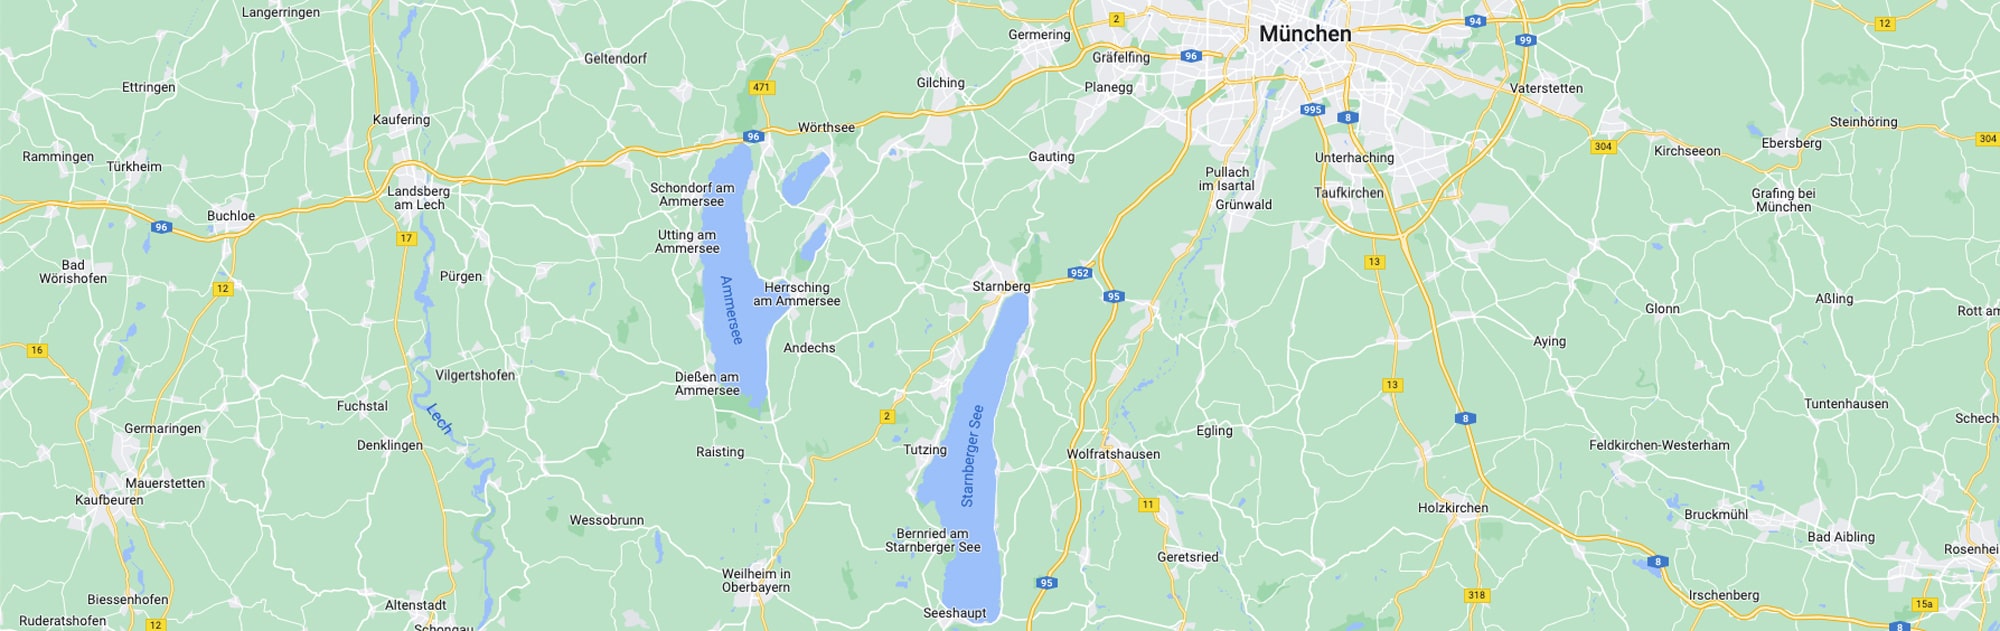 Stefanie-Hrkal-Pferdetrainerin-München-Starnberg-Map-min